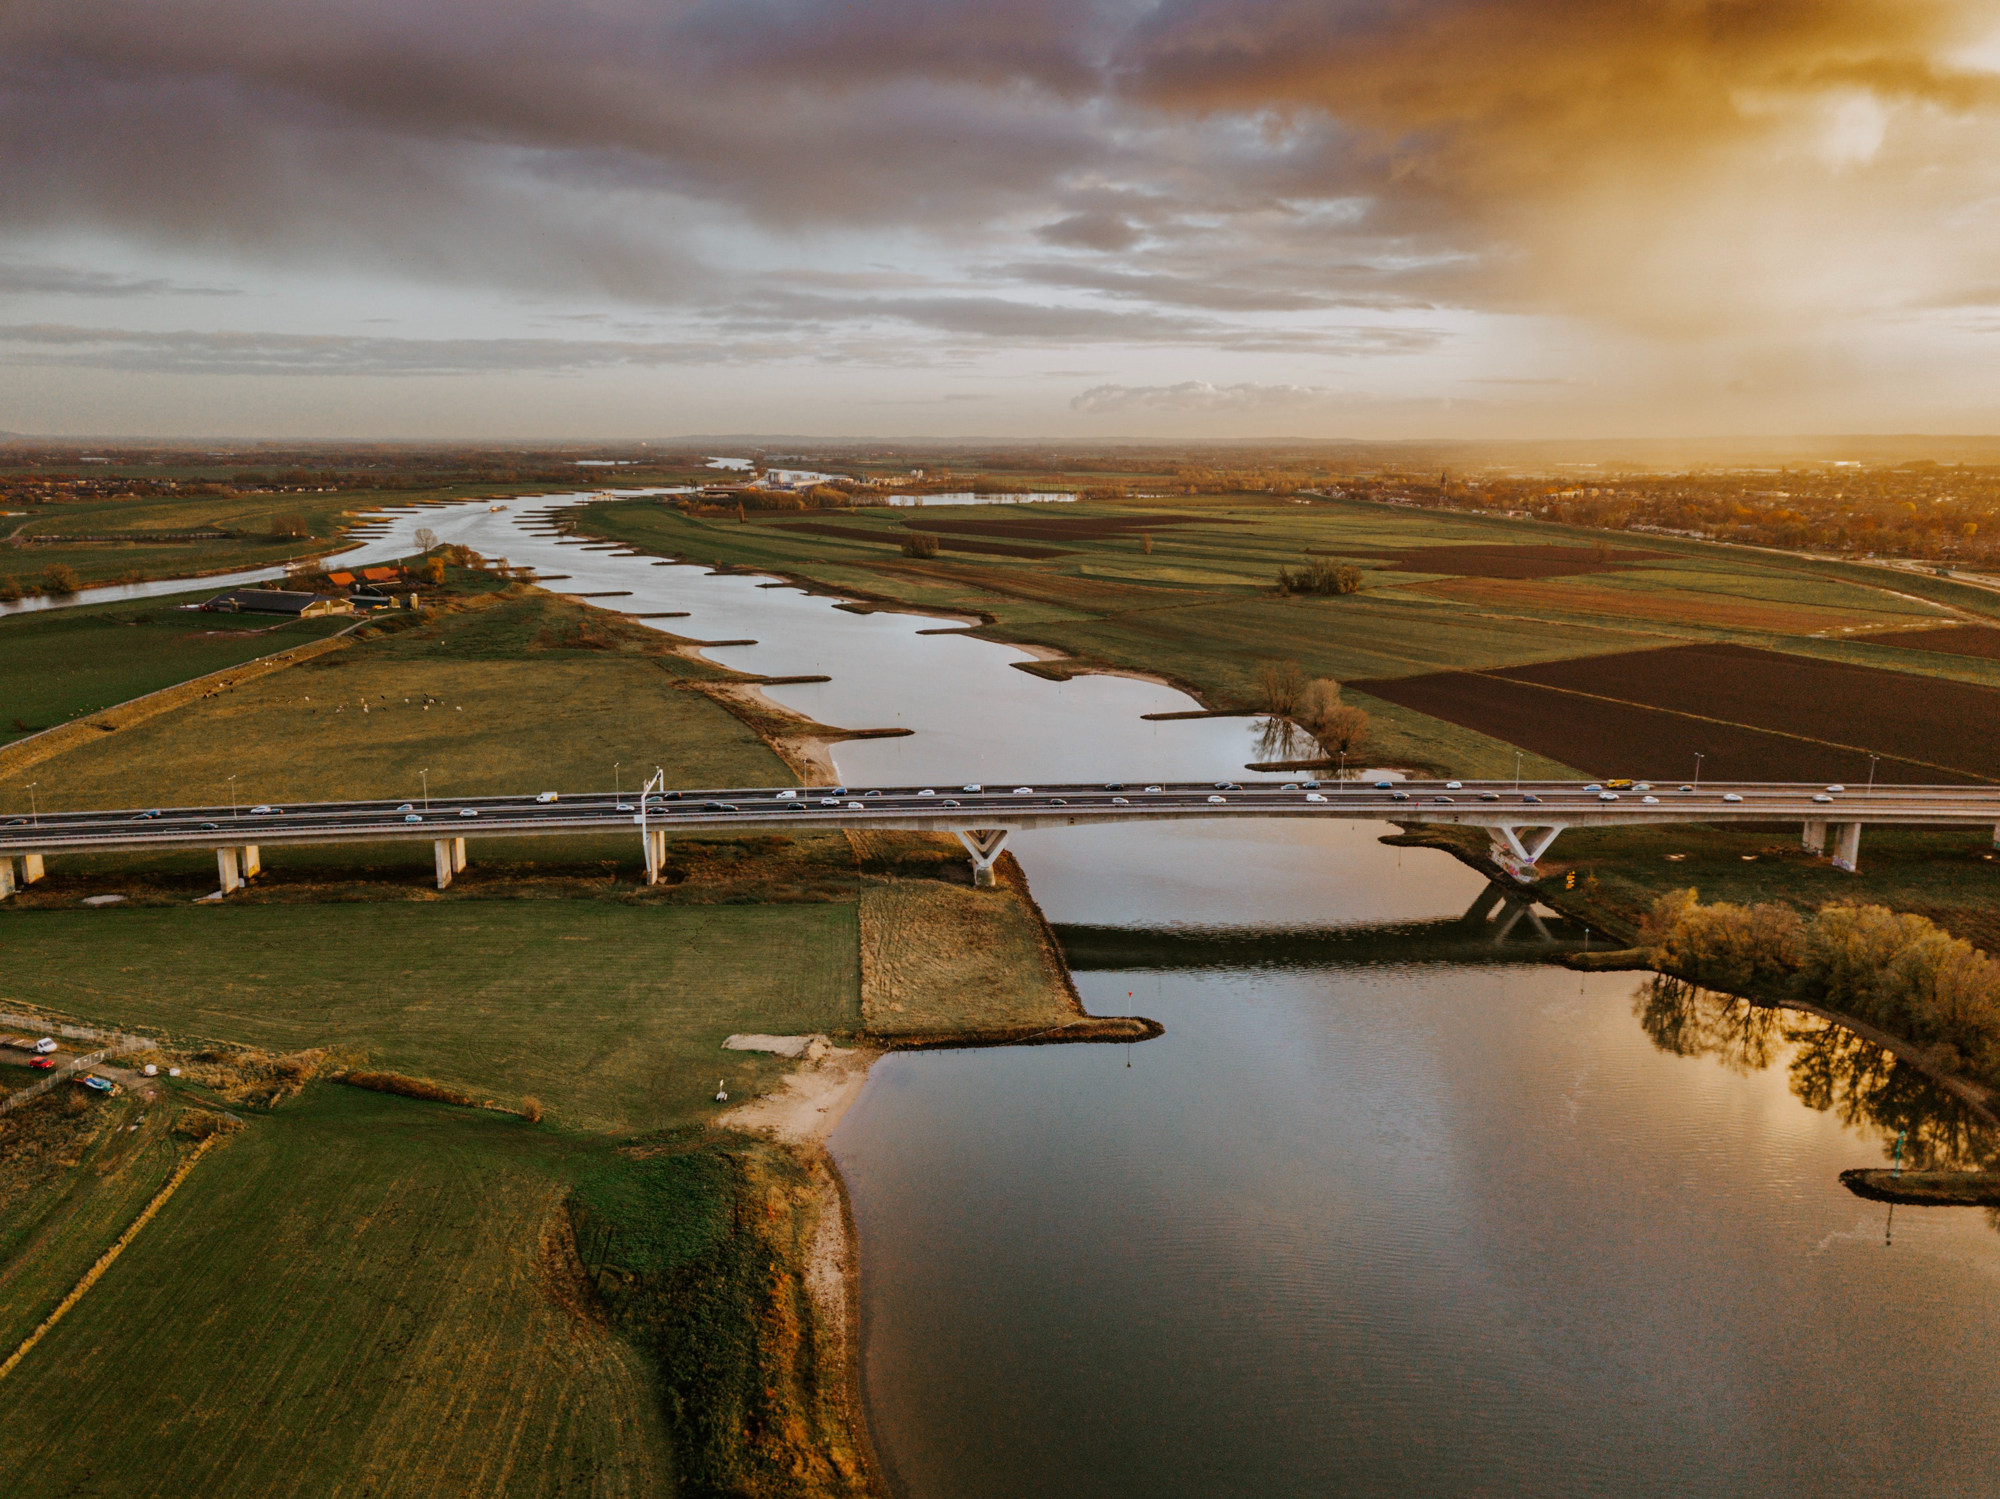 Nederlands landschapsfoto van een polder; rivier met daarover een brug waarover auto's rijden